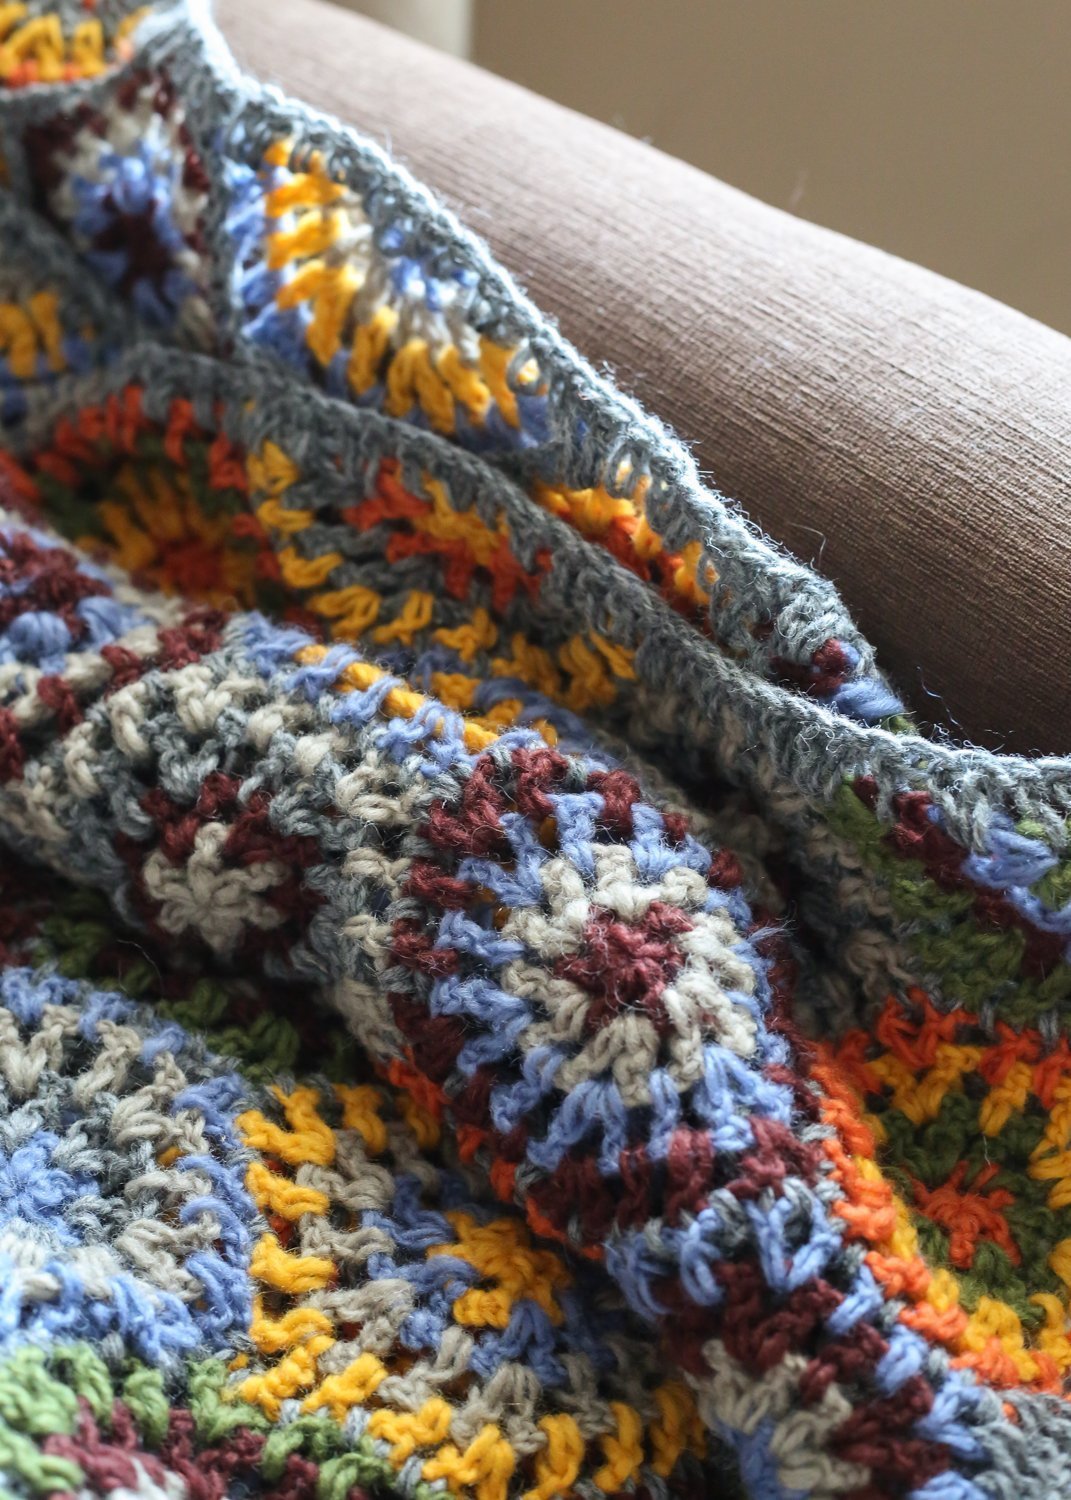 Hand Crochet Blanket Kit